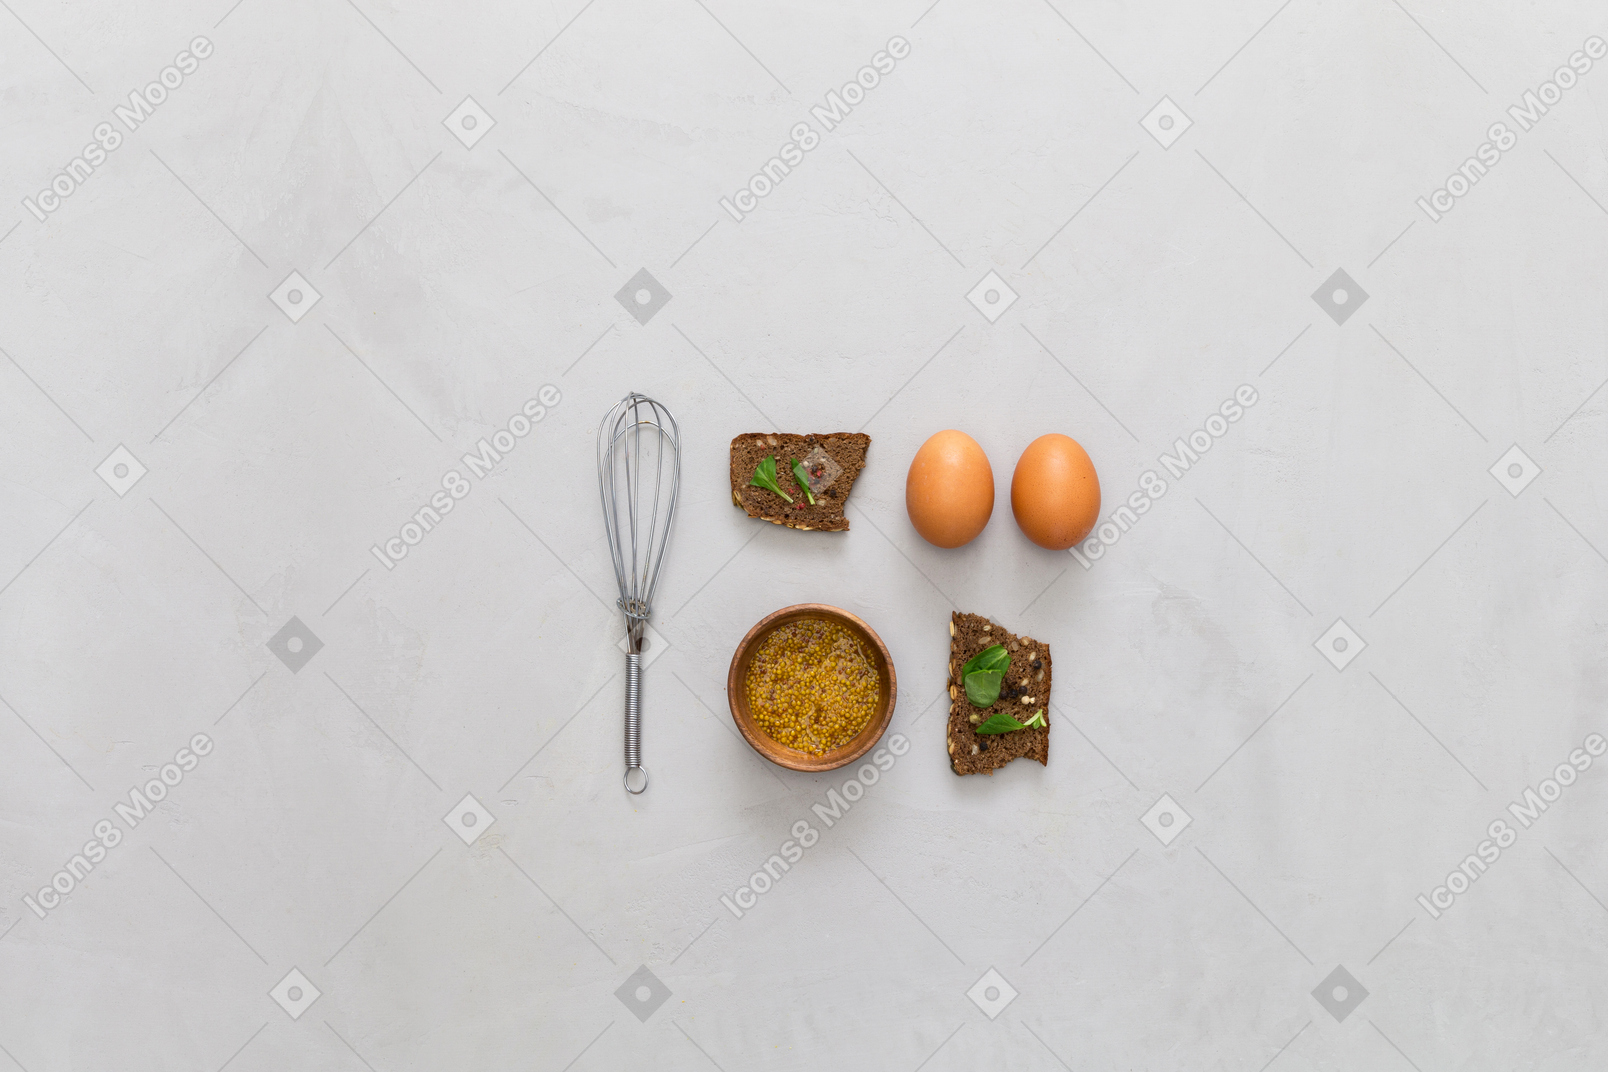 Яйцо и закуска идеально подходят для завтрака